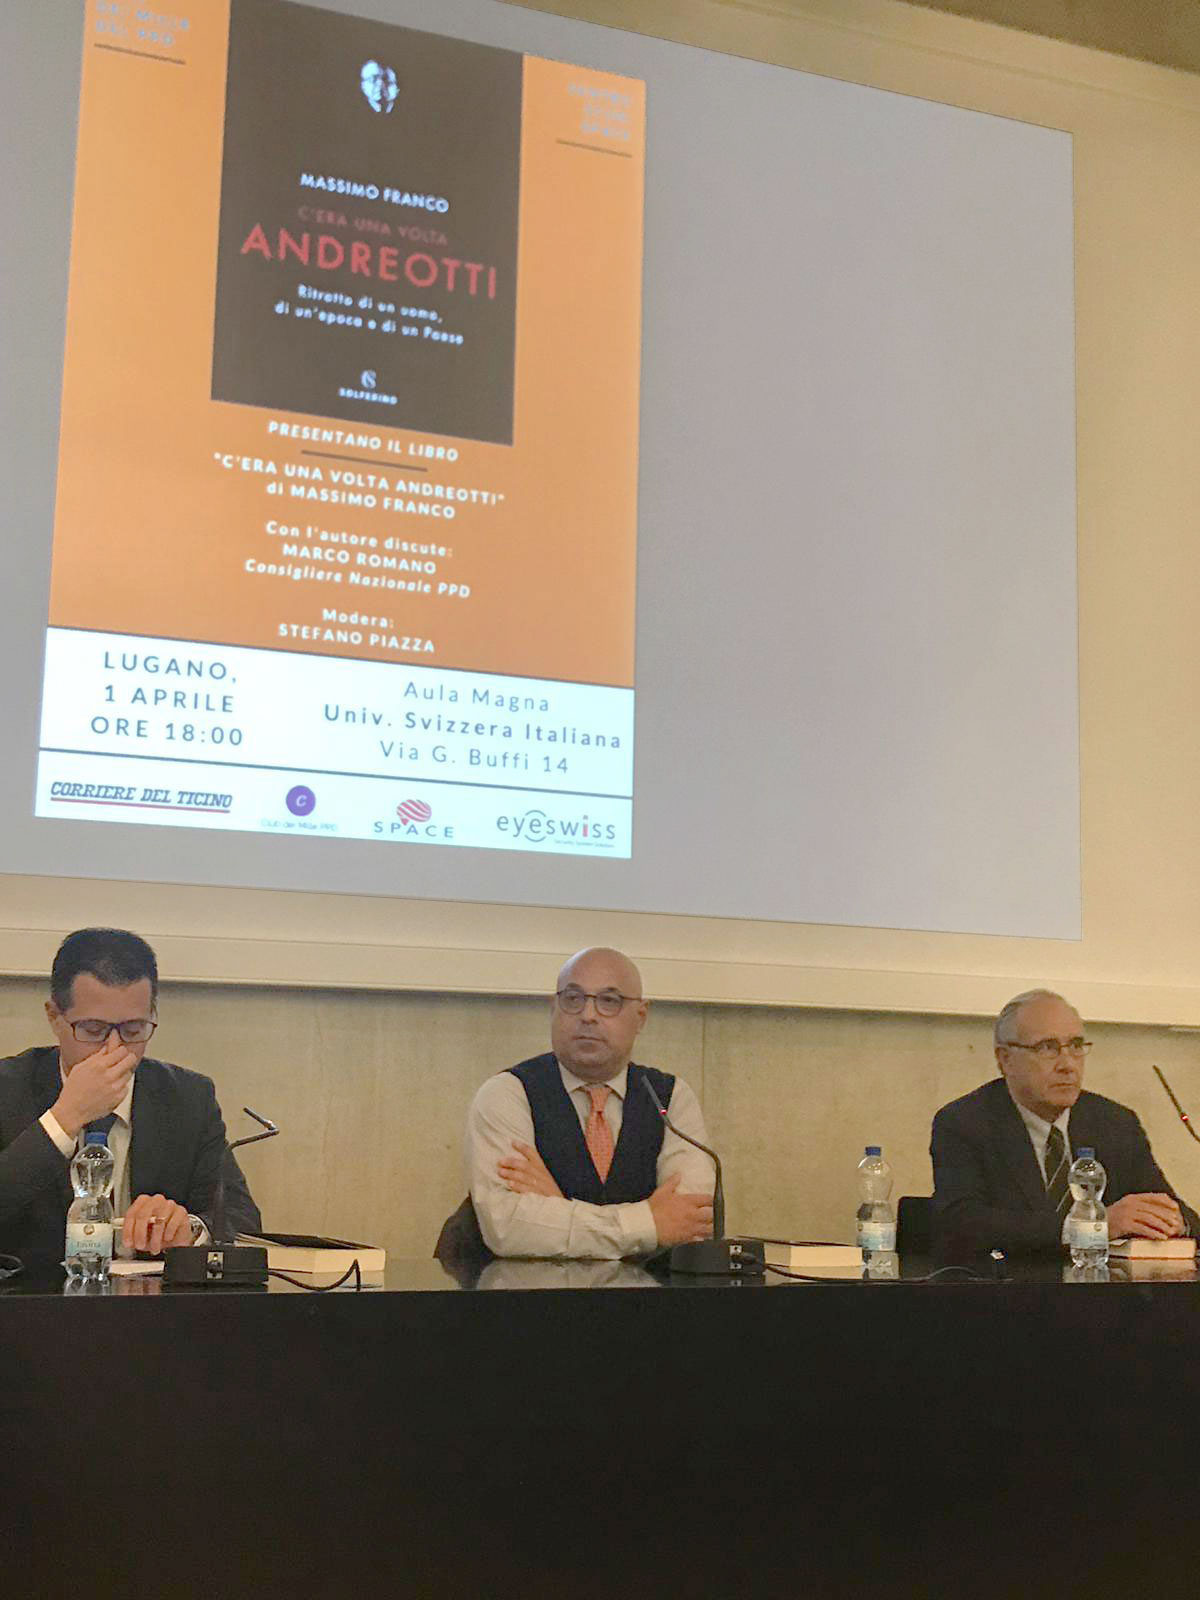 Stefano Piazza, Massimo Franco e Marco Romano durante la presentazione del libro C'era una volta Andreotti